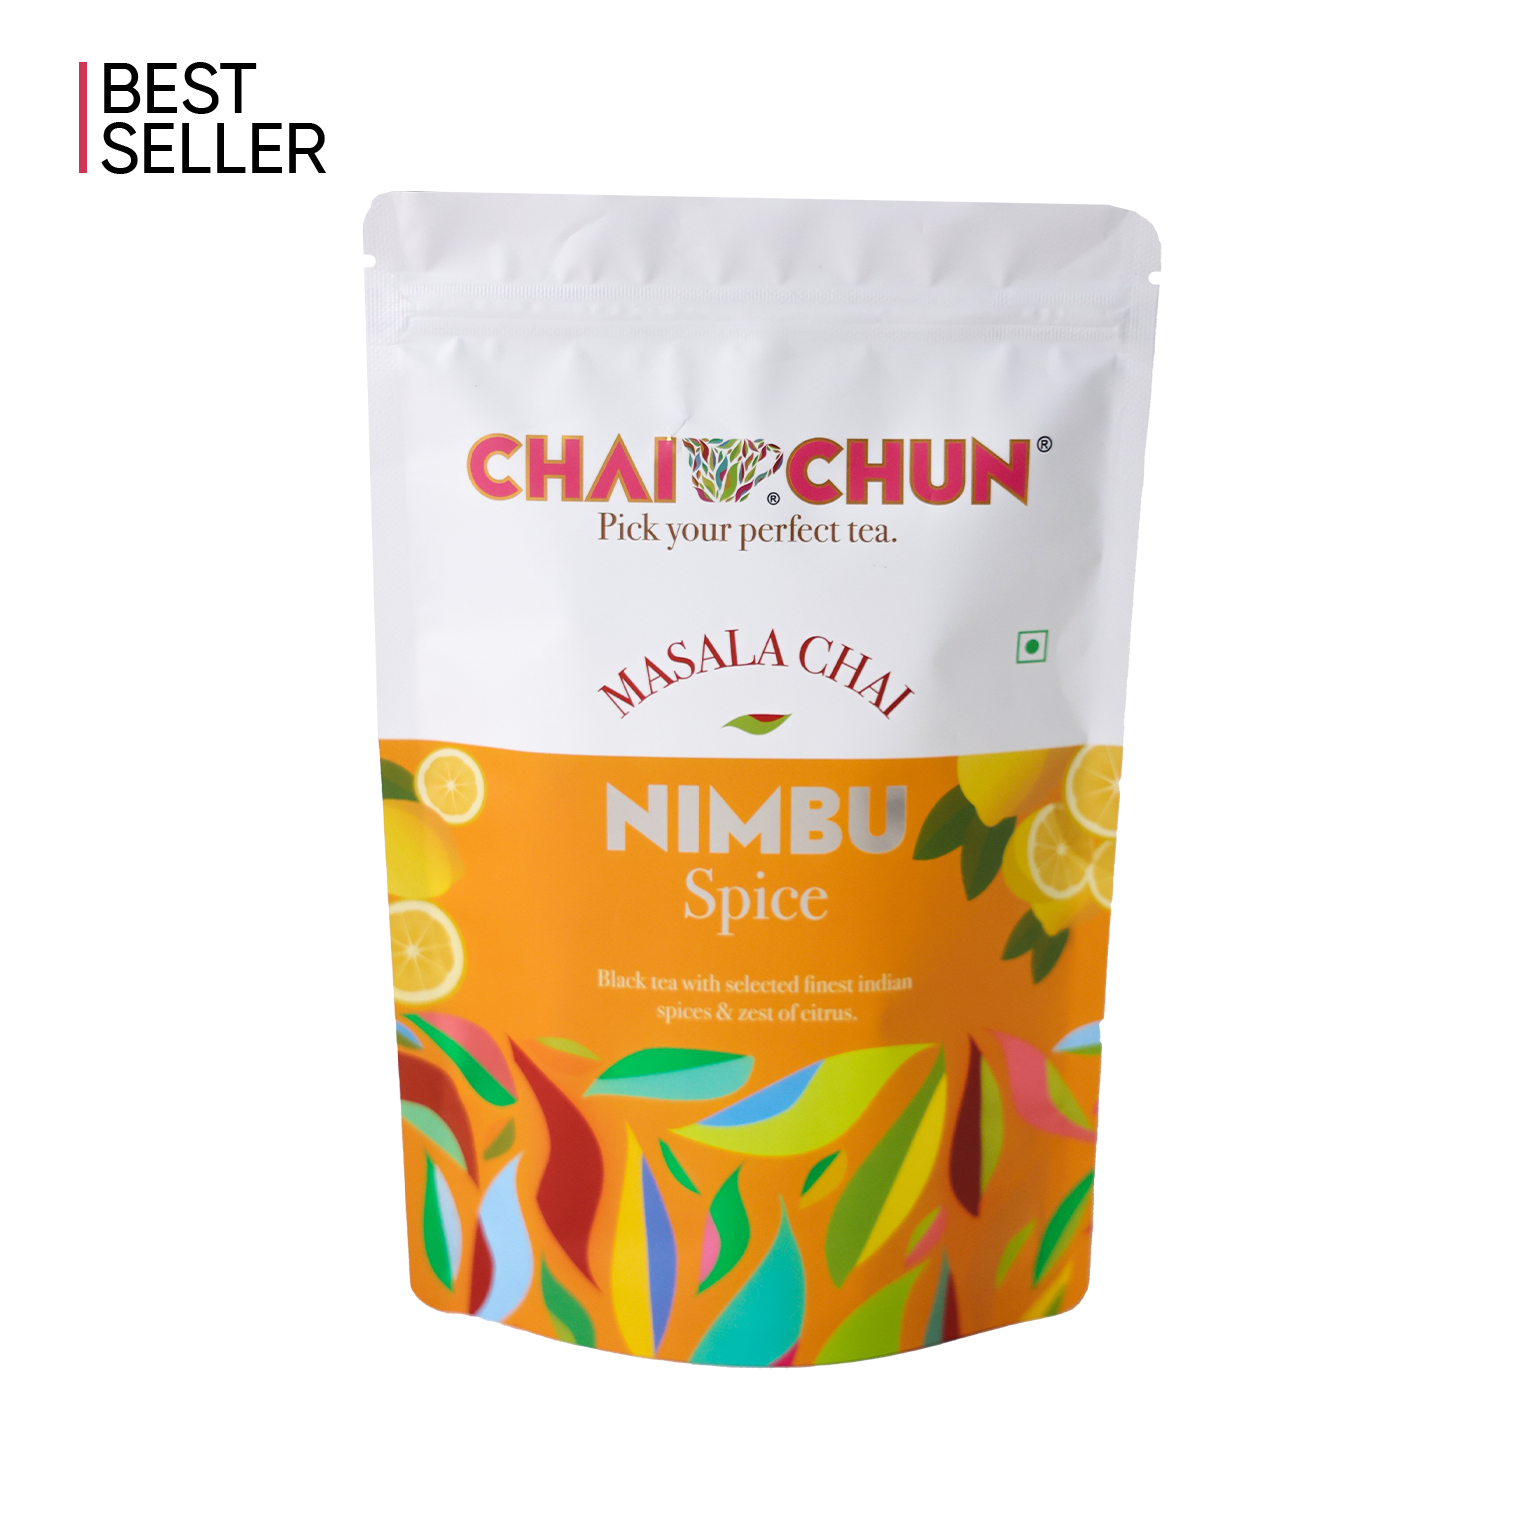 Nimbu Spice Tea